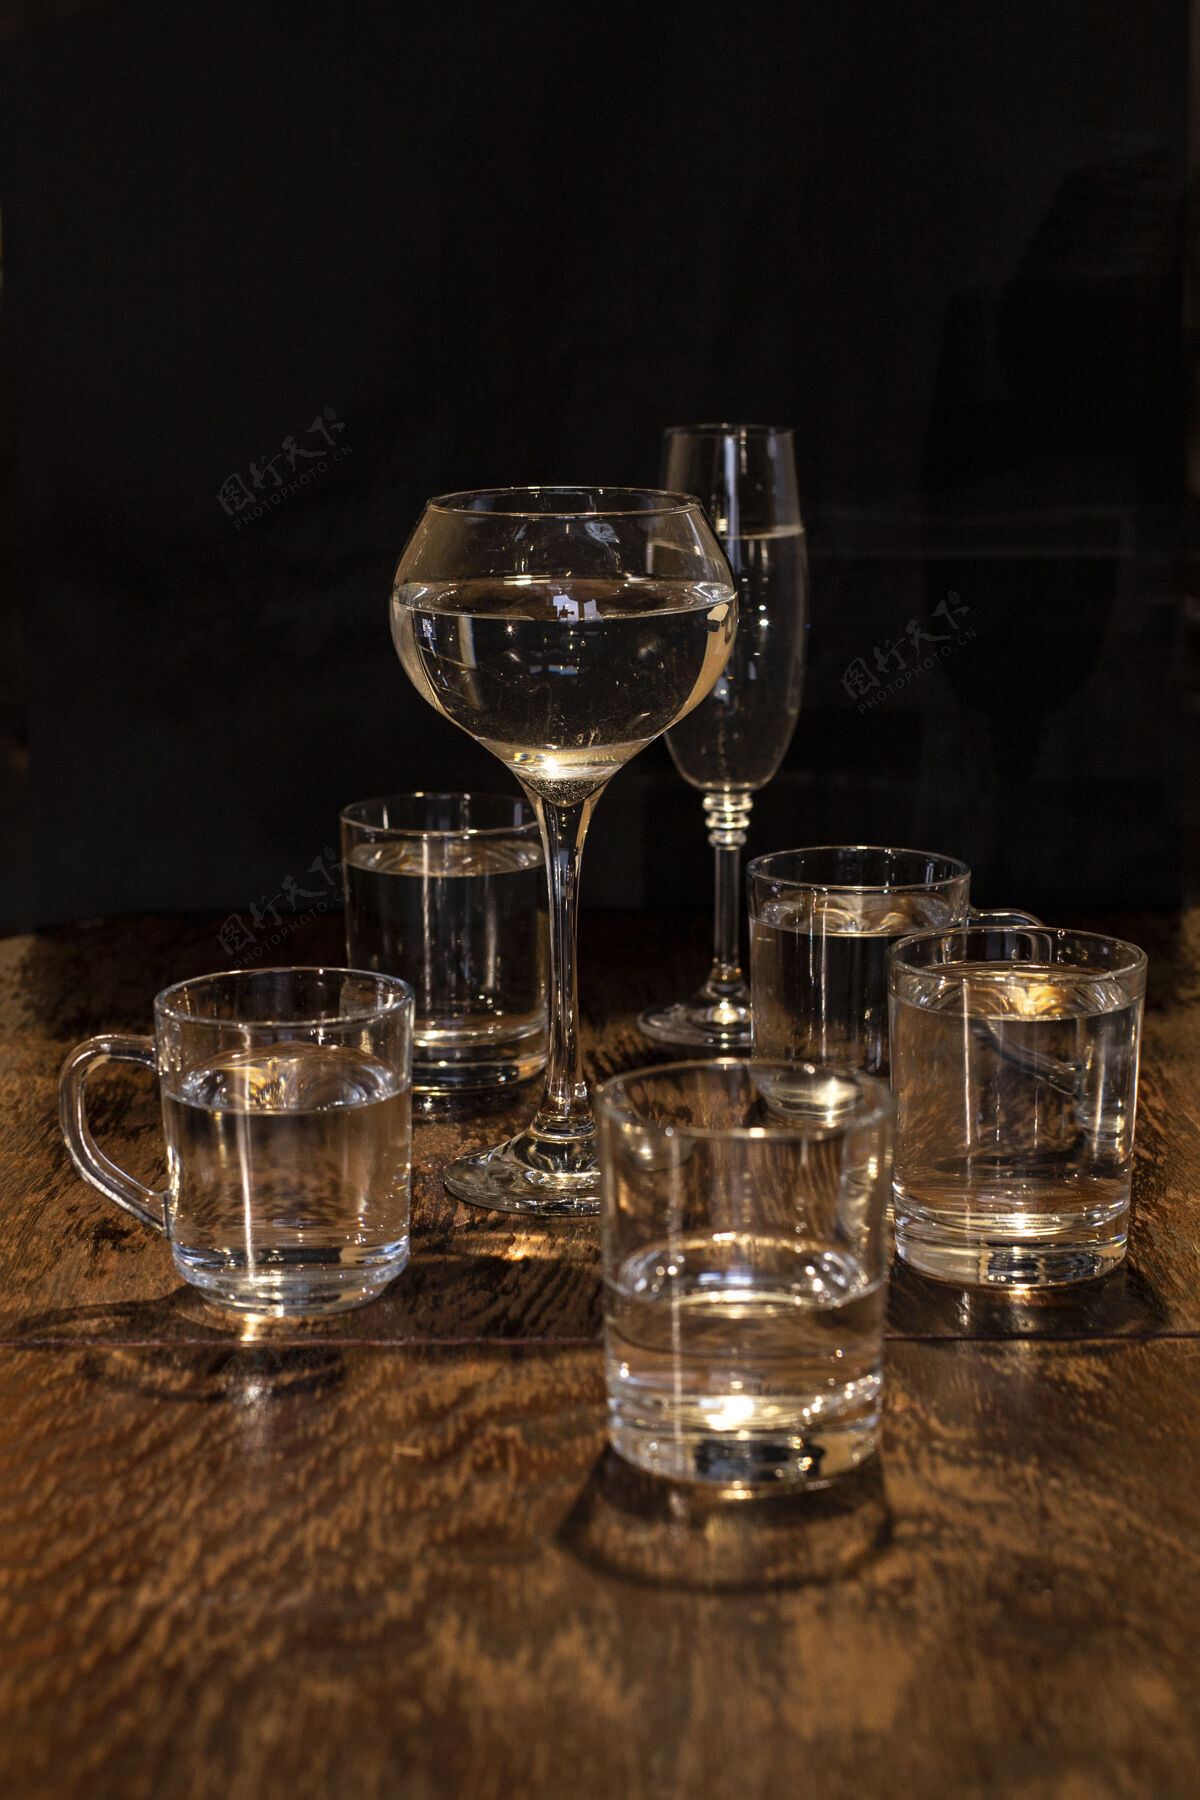 干净盘子 放在木桌上 各种玻璃杯里装着饮料新鲜餐具饮食